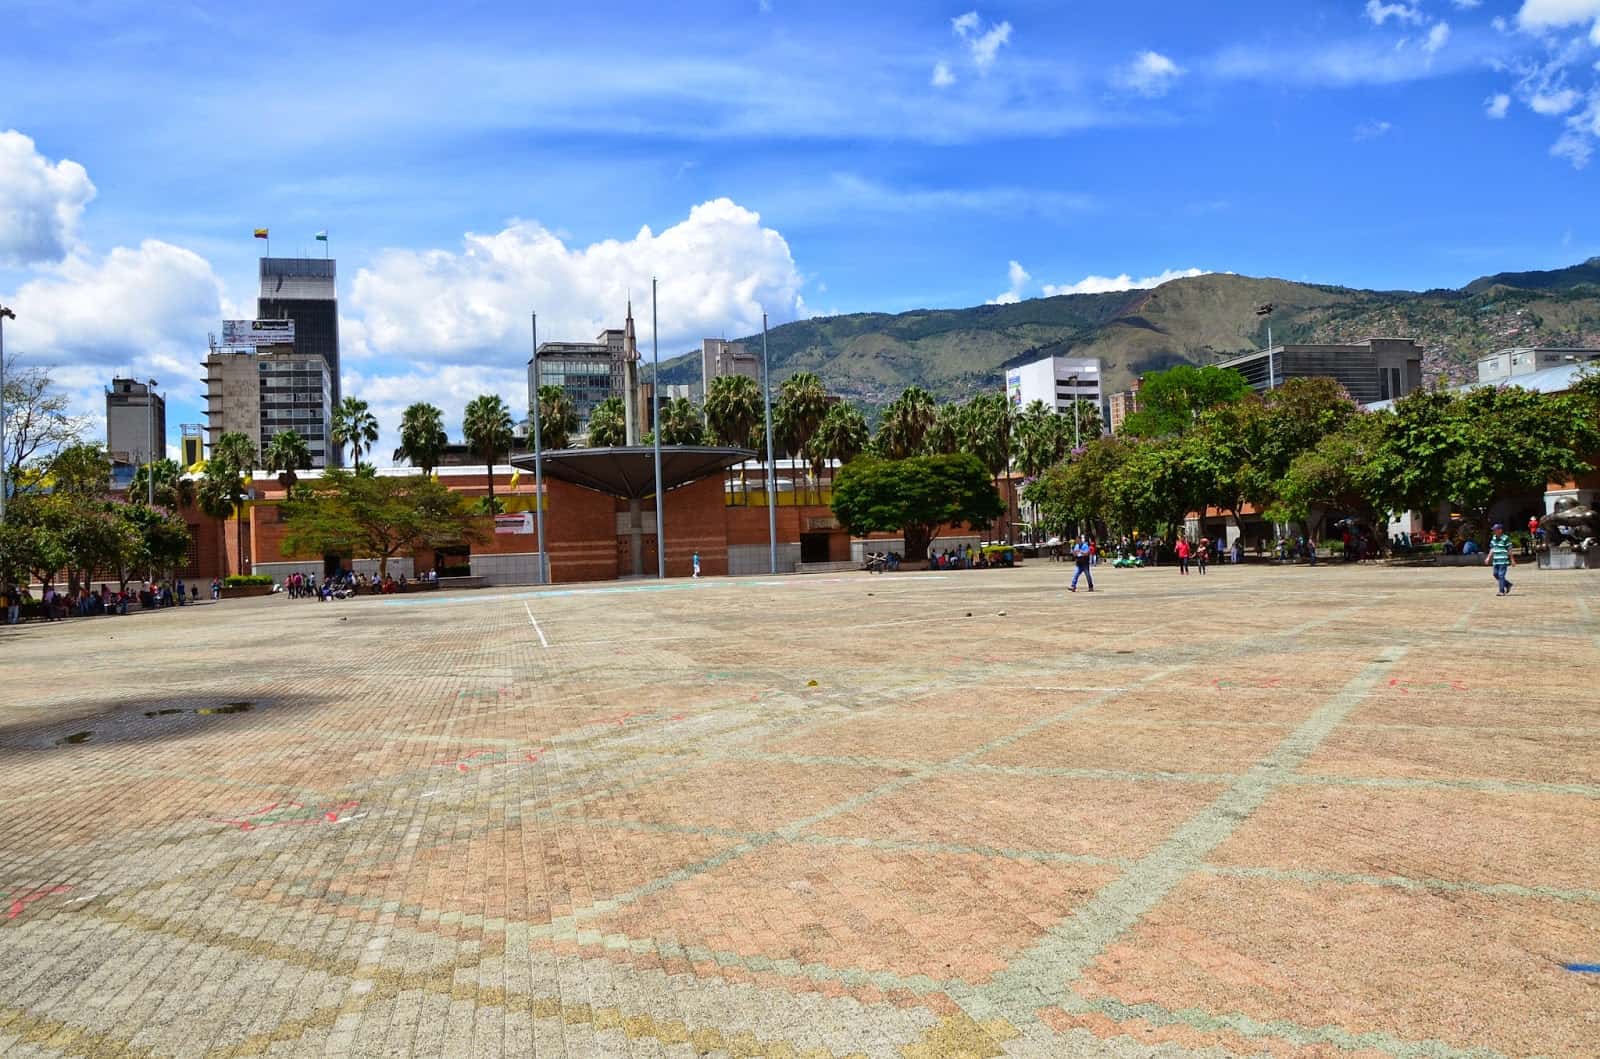 Parque San Antonio in Medellín, Antioquia, Colombia